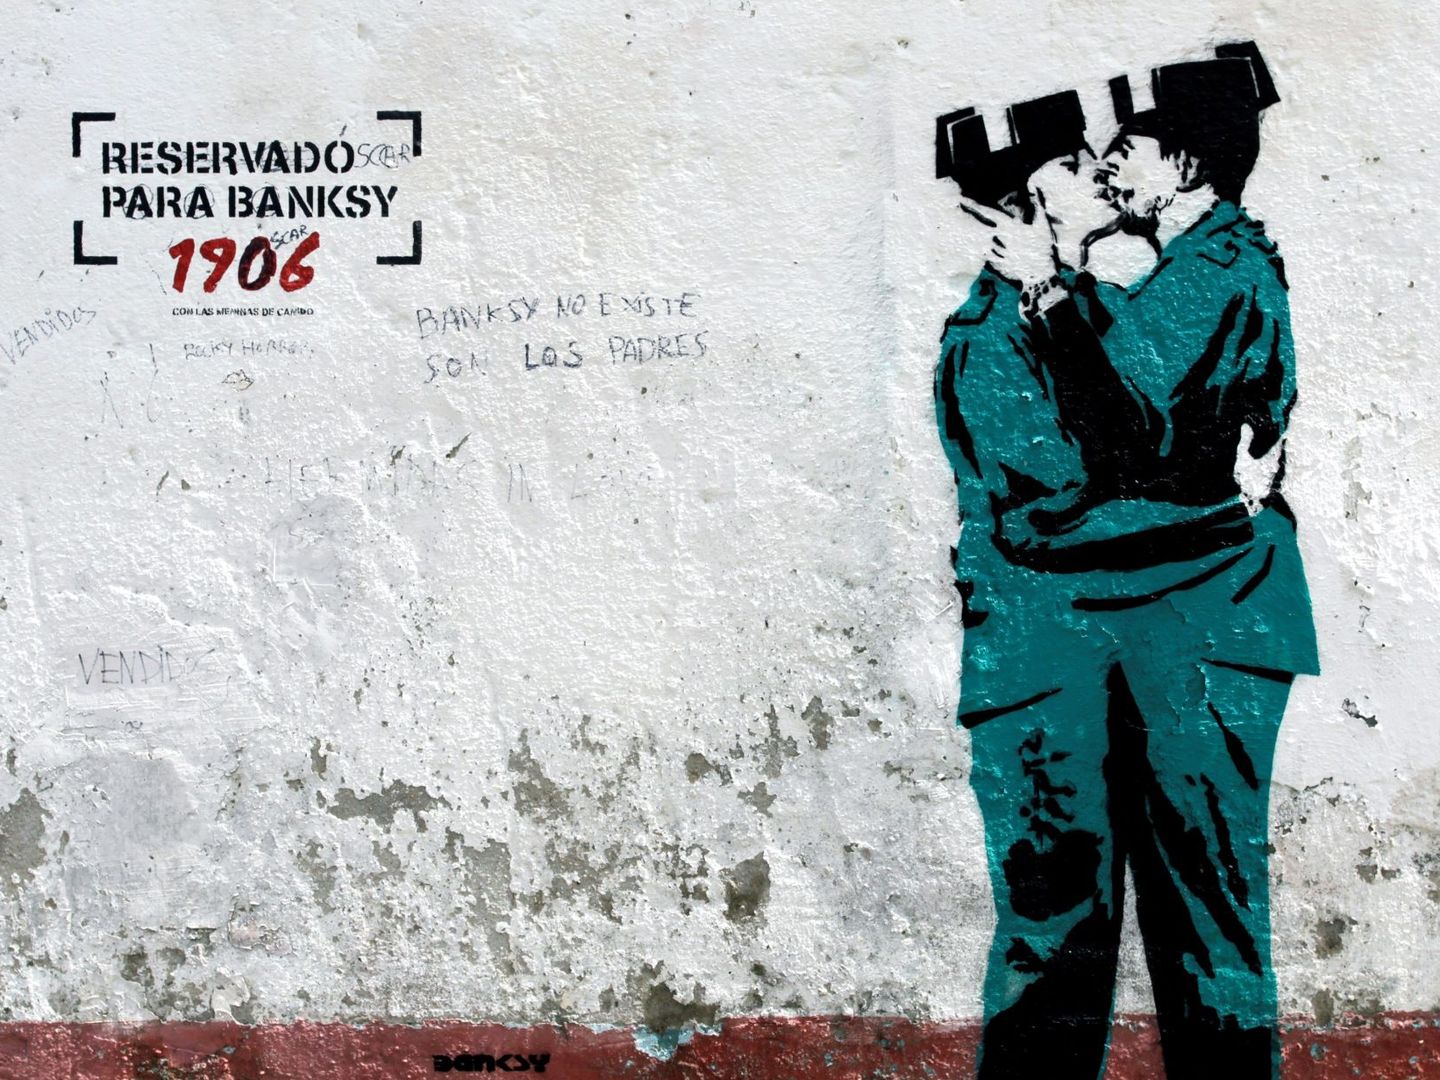 Mural en Canido ofrecido a Banksy. (EFE/Kiko Delgado)